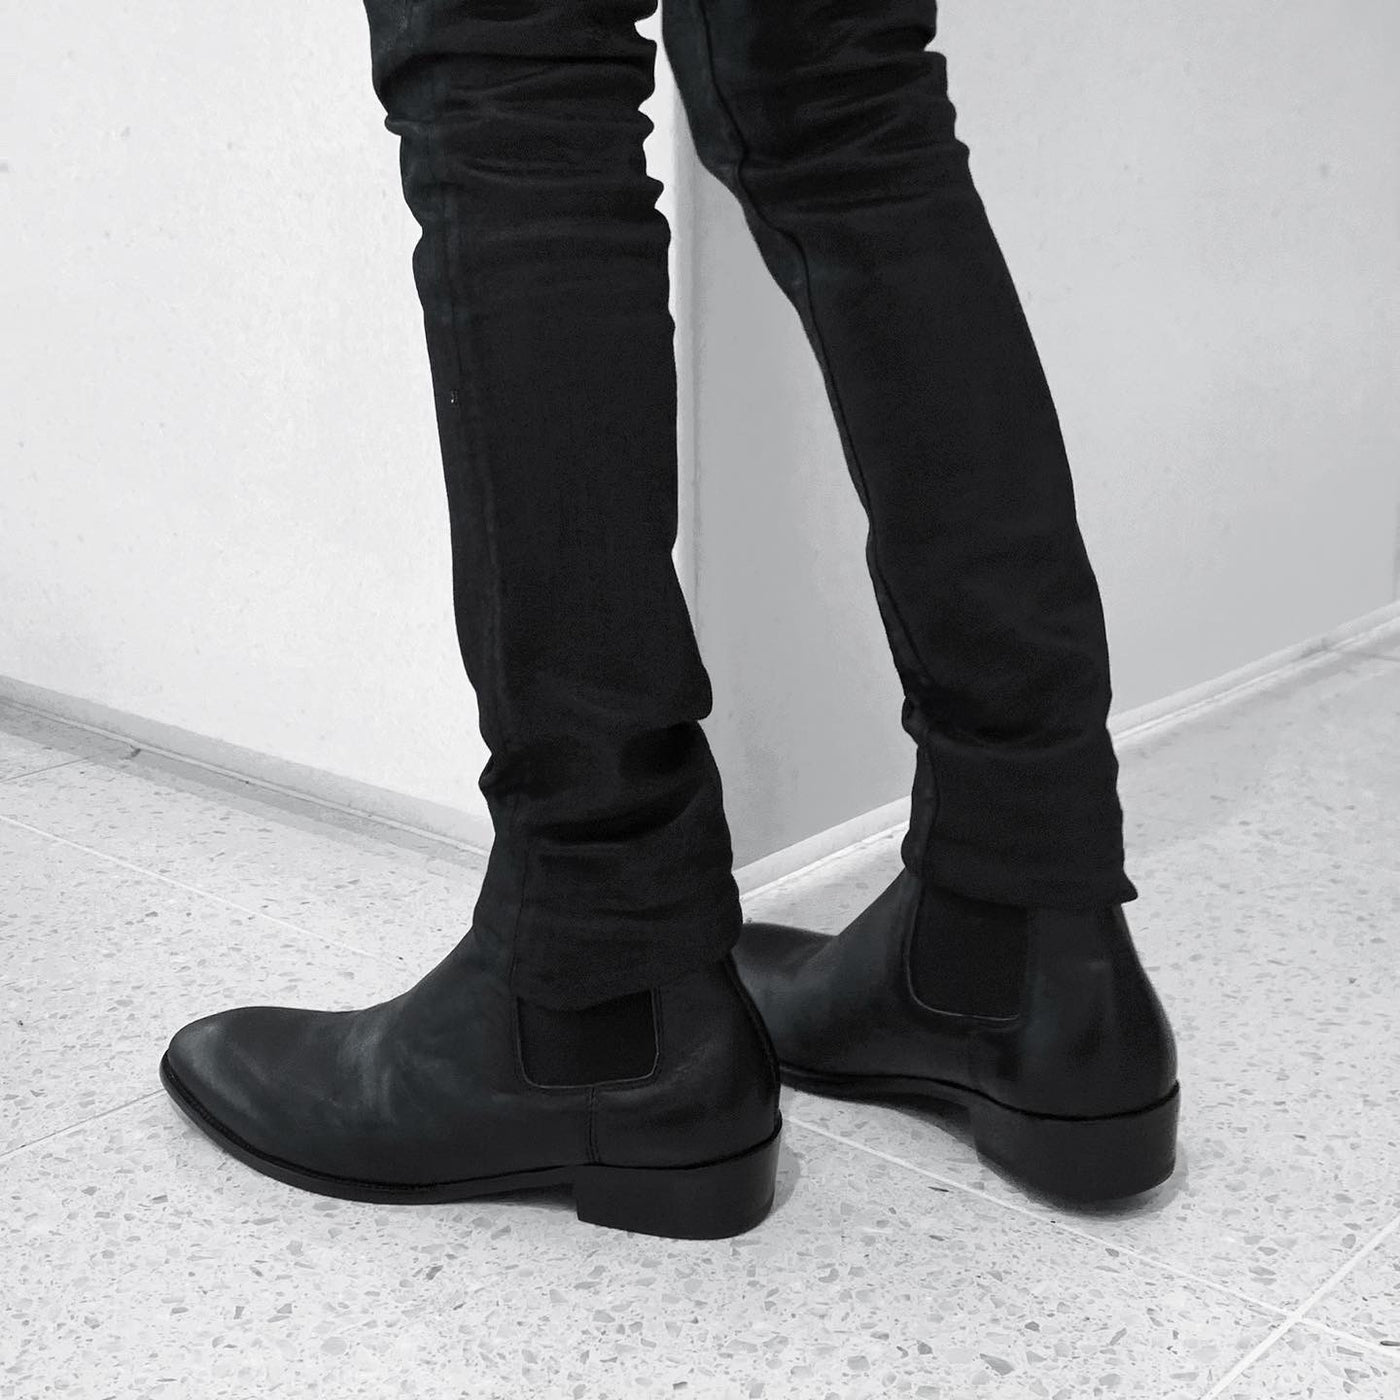 "leather side gore boots"leather side gore boots